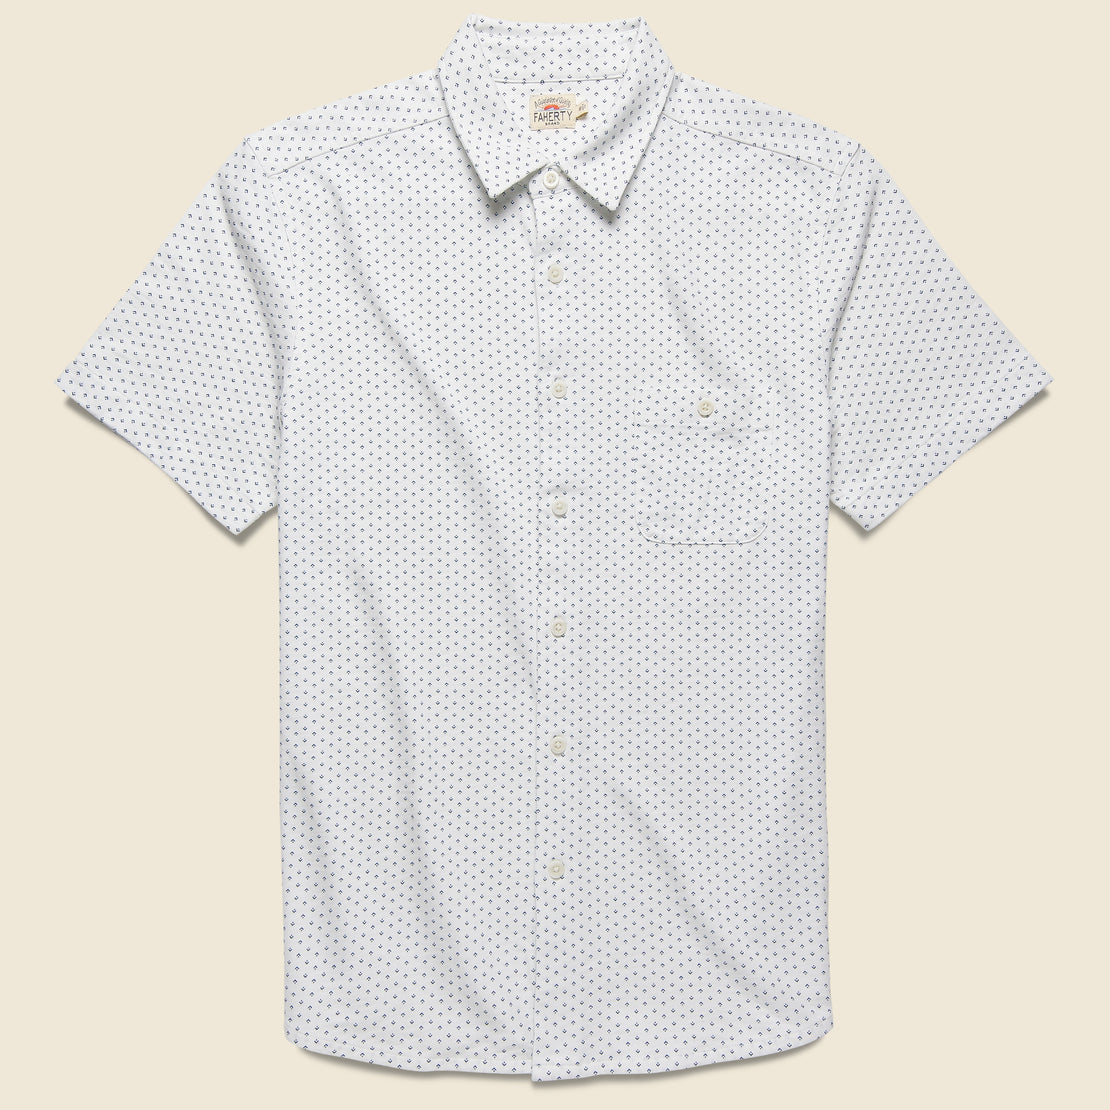 Faherty Knit Coast Shirt - Chevron Dot